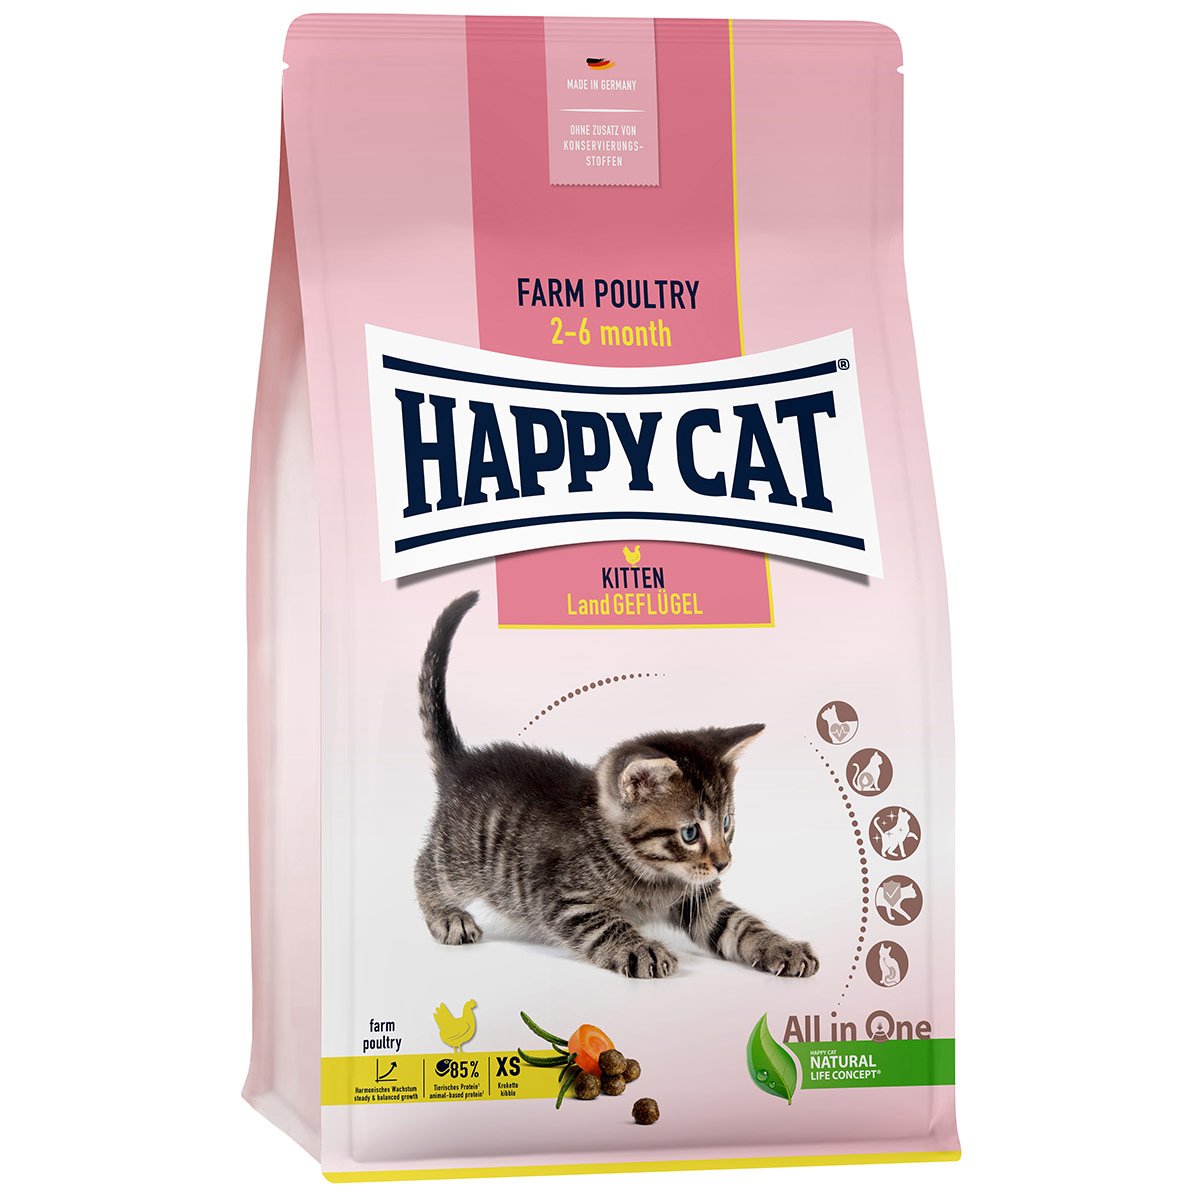 Happy Cat Young Kitten venkovská drůbež 4× 1,3 kg